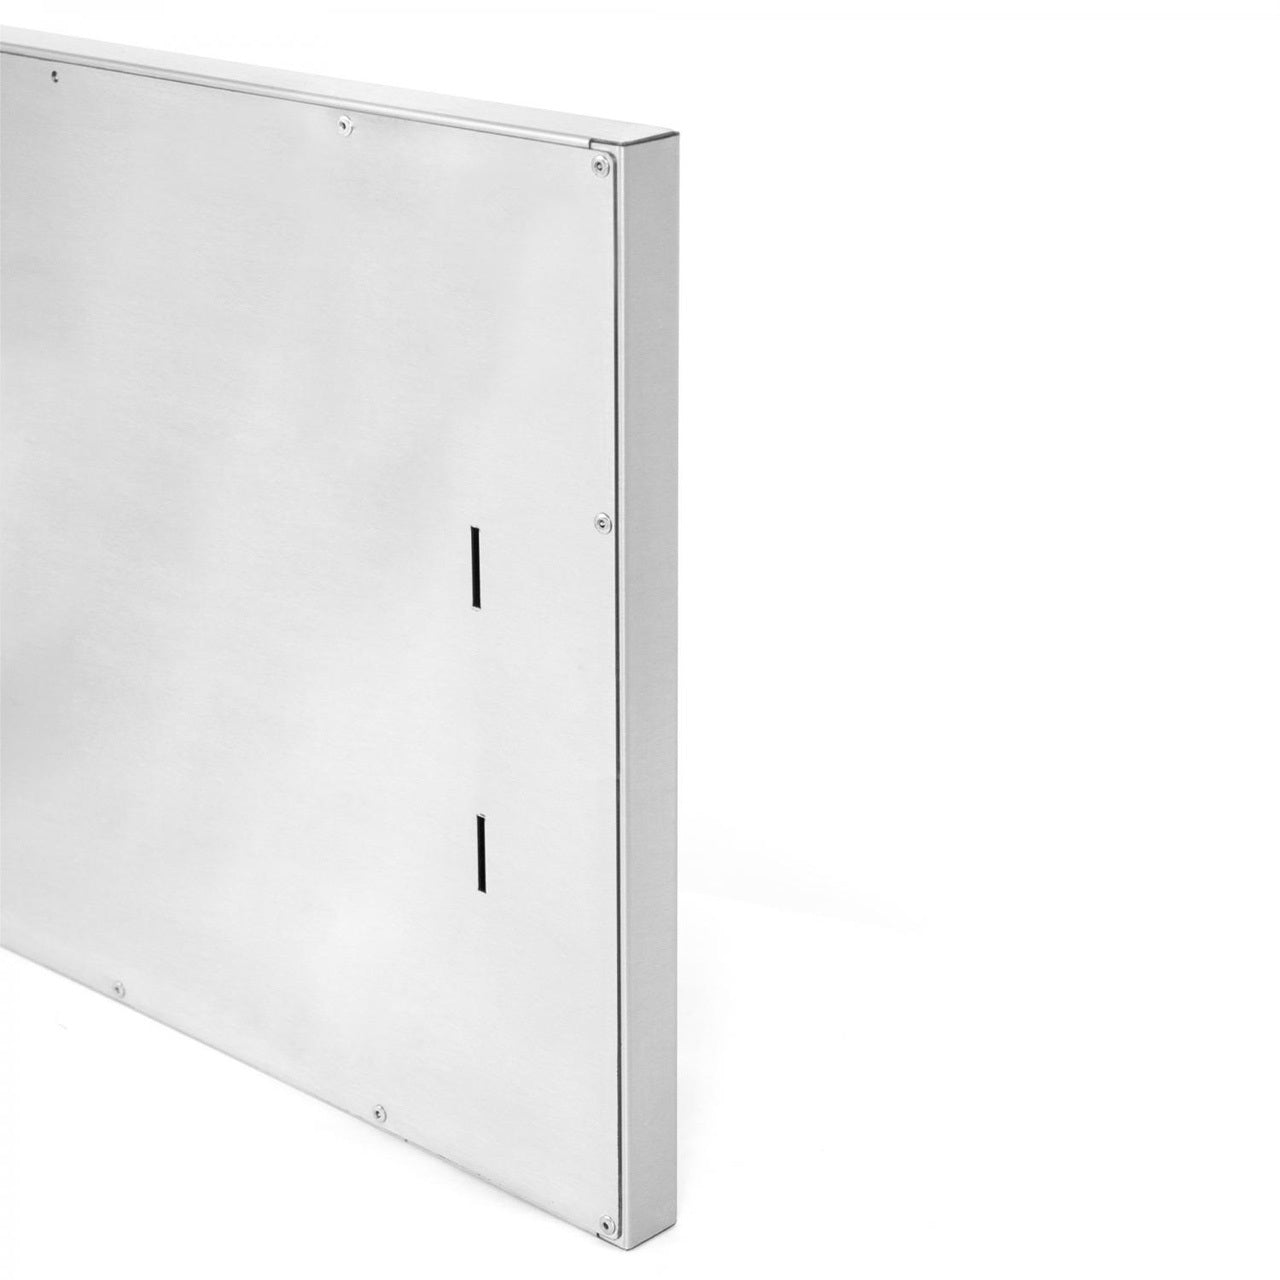 BBQ Island 350 Series - 17x24 Single Access Verticle Door